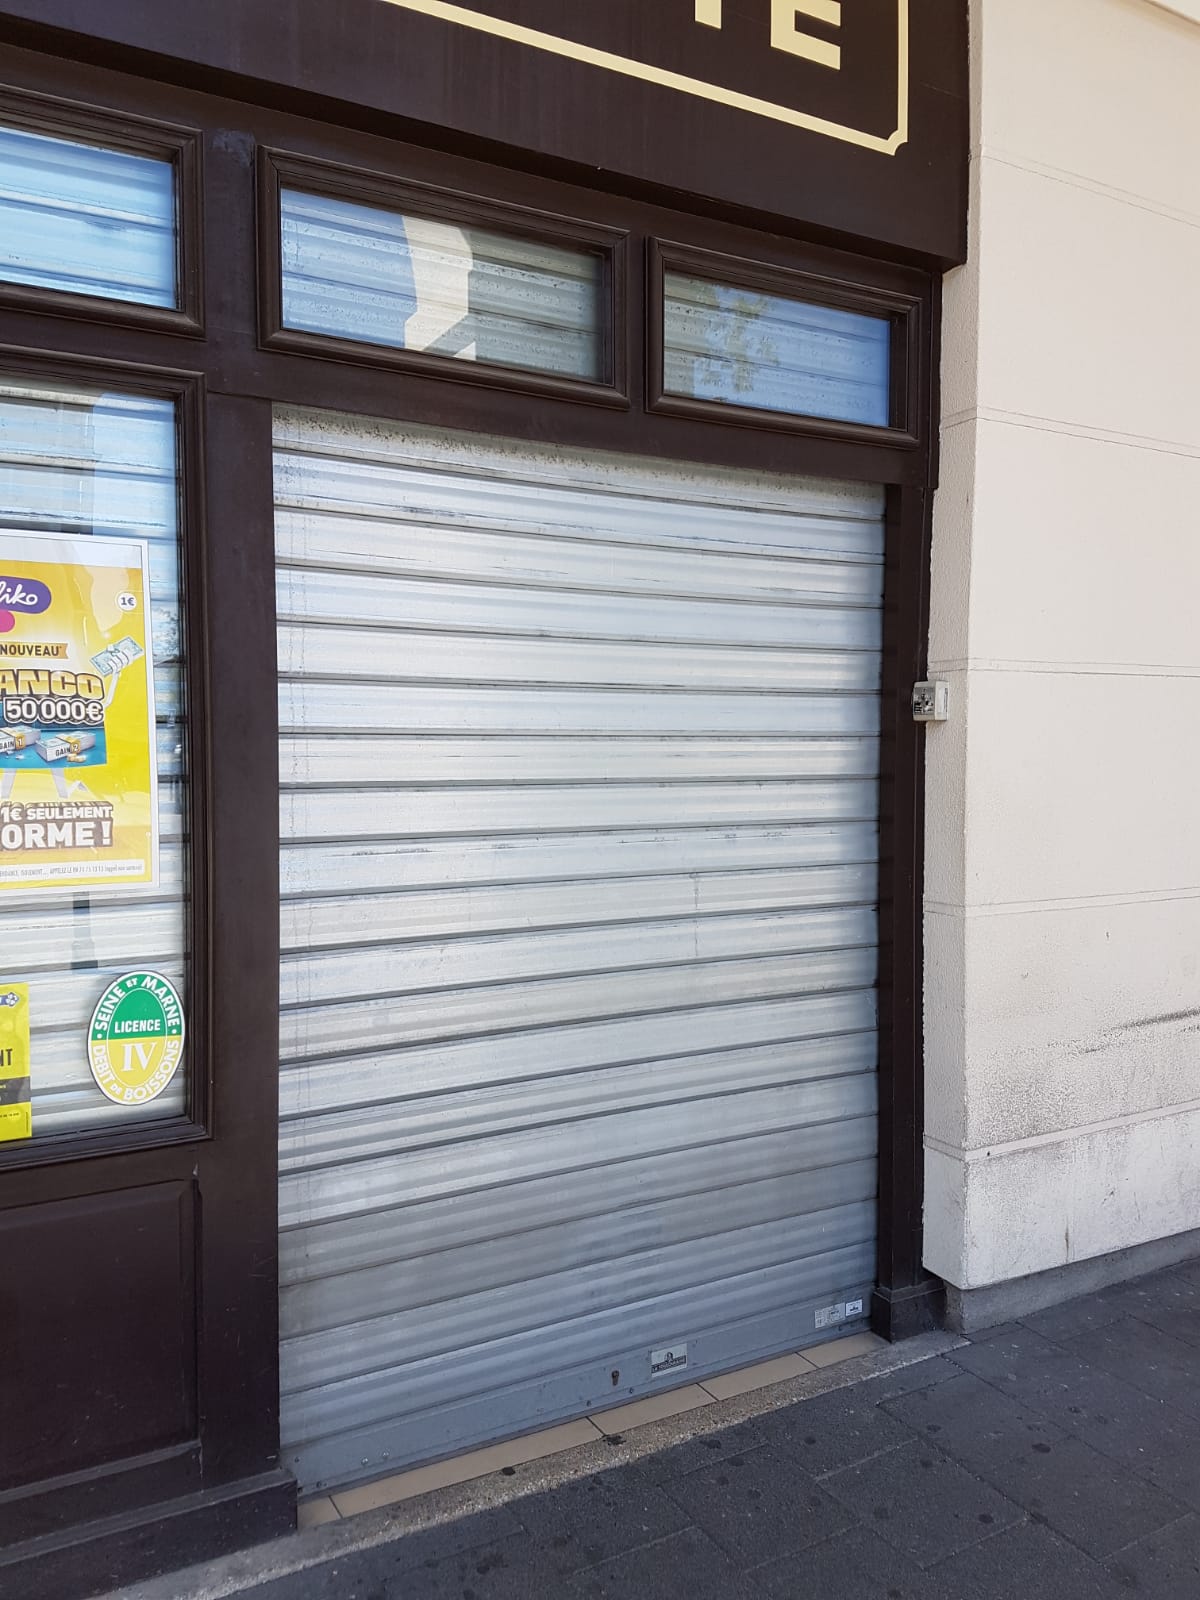 Déblocage de rideaux métalliques sur Paris : où trouver le professionnel ?